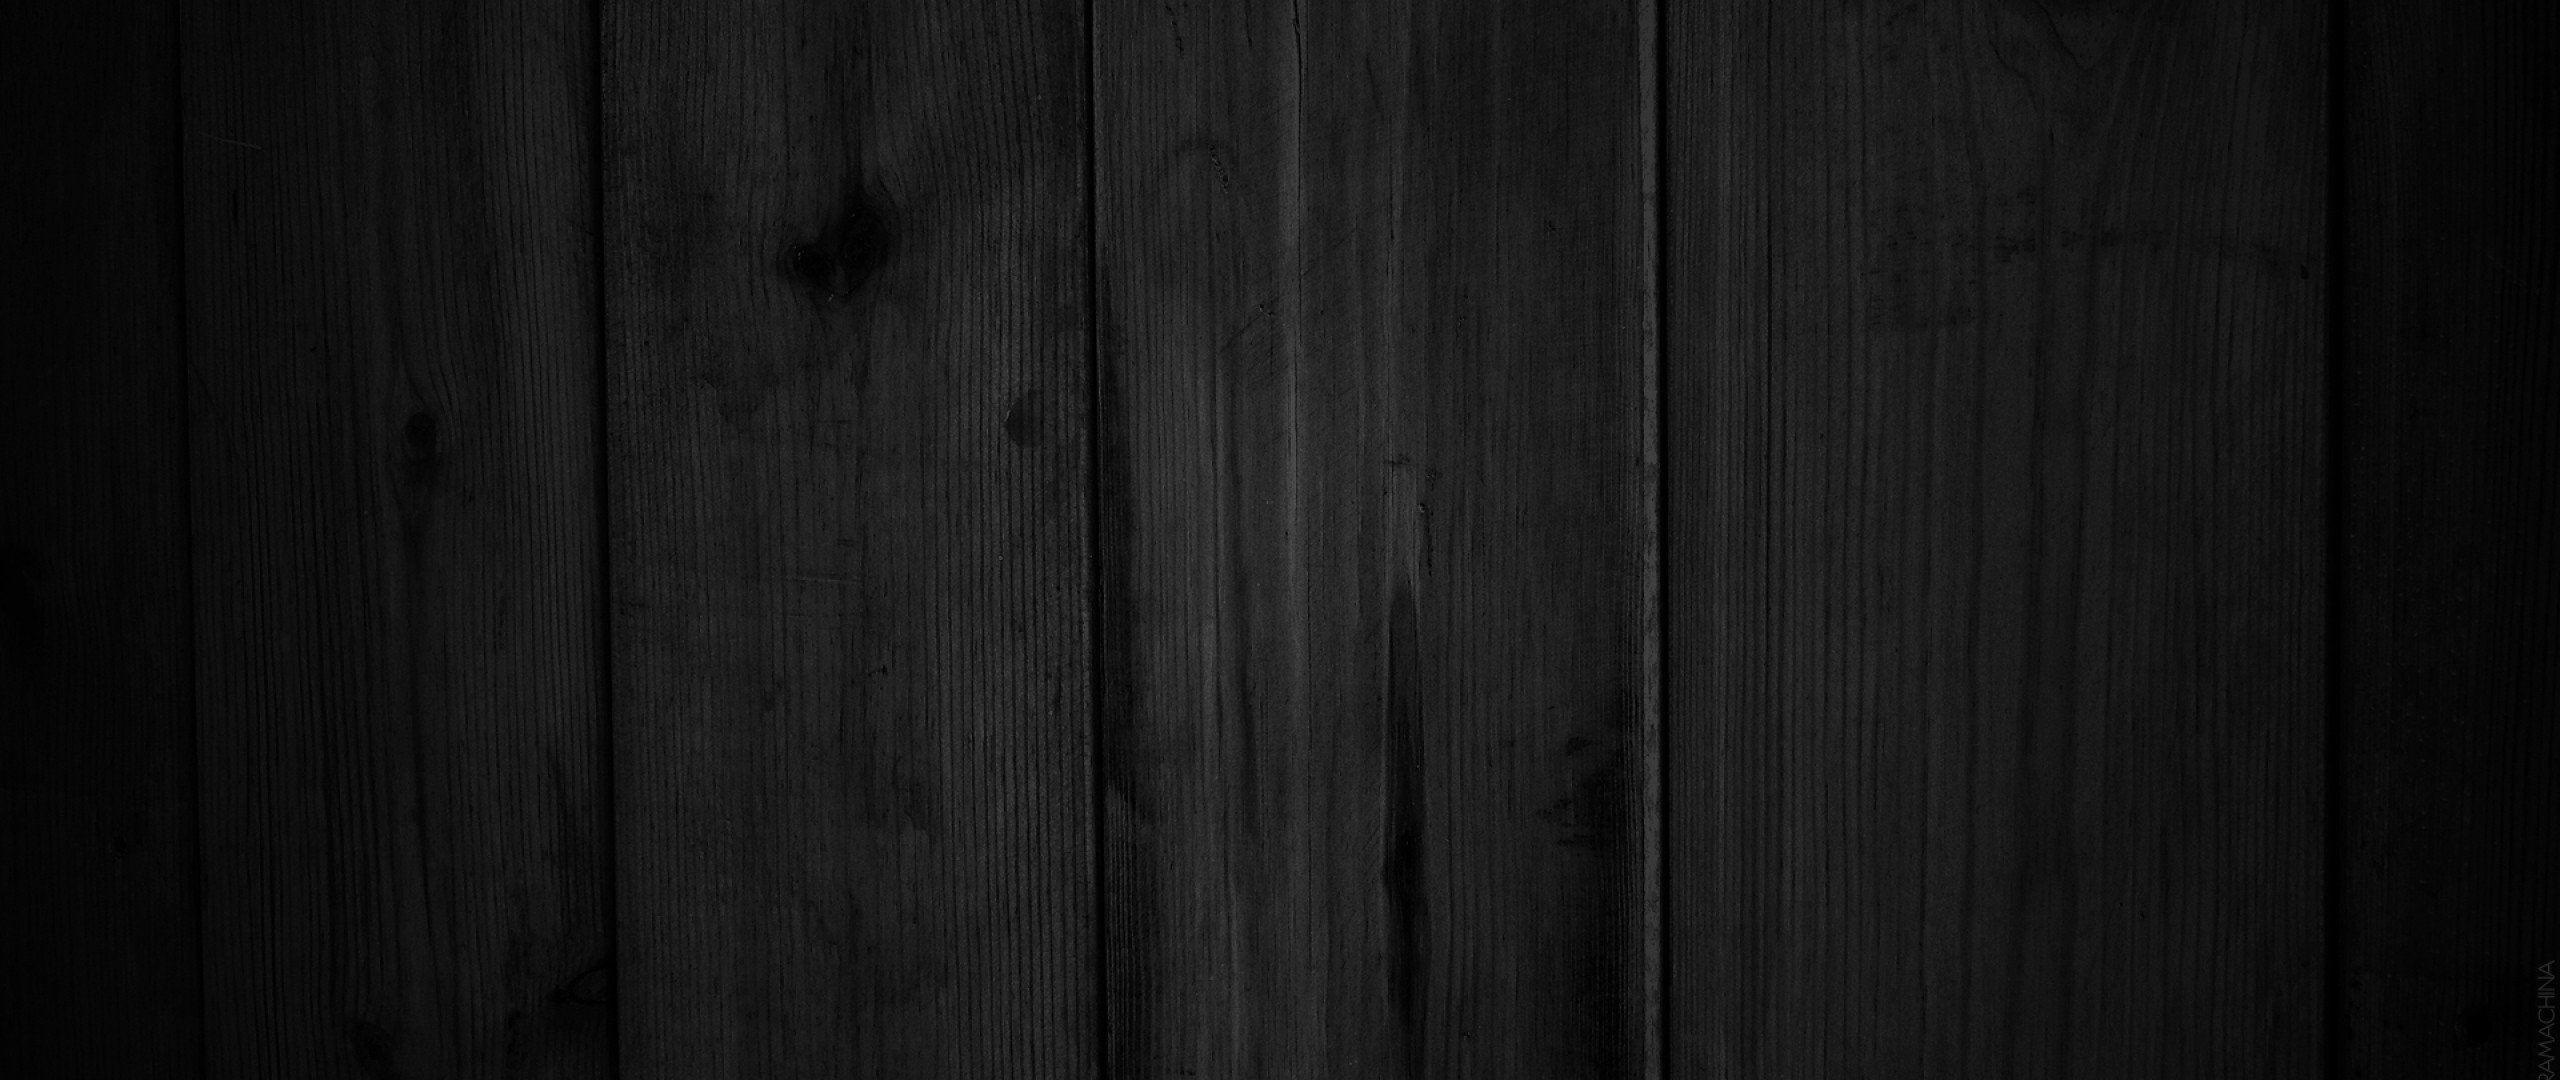 Черное дерево. Черный лакированный стол фон. Бесшовная текстура деревянных досок черная. Фон стола для фотошопа. Черный матовый деревянный фон.